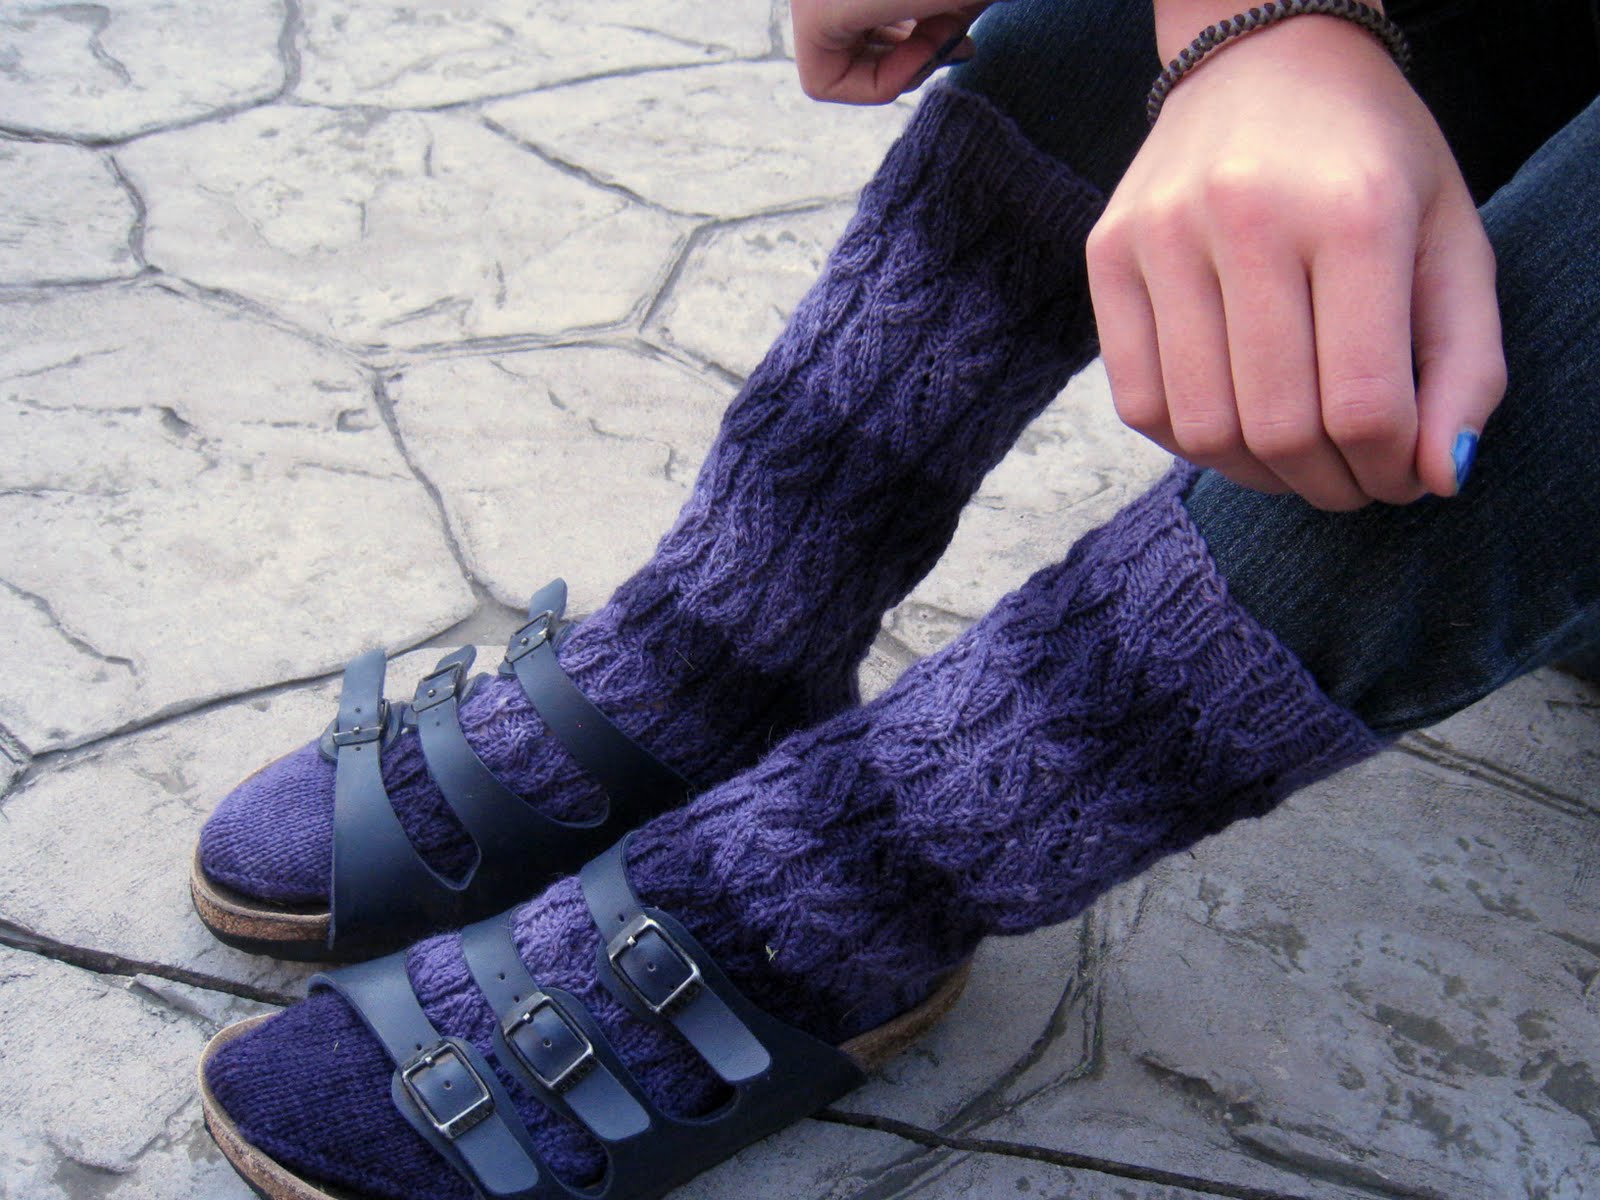 Wearing Birkenstock With Socks Afraid to wear socks with